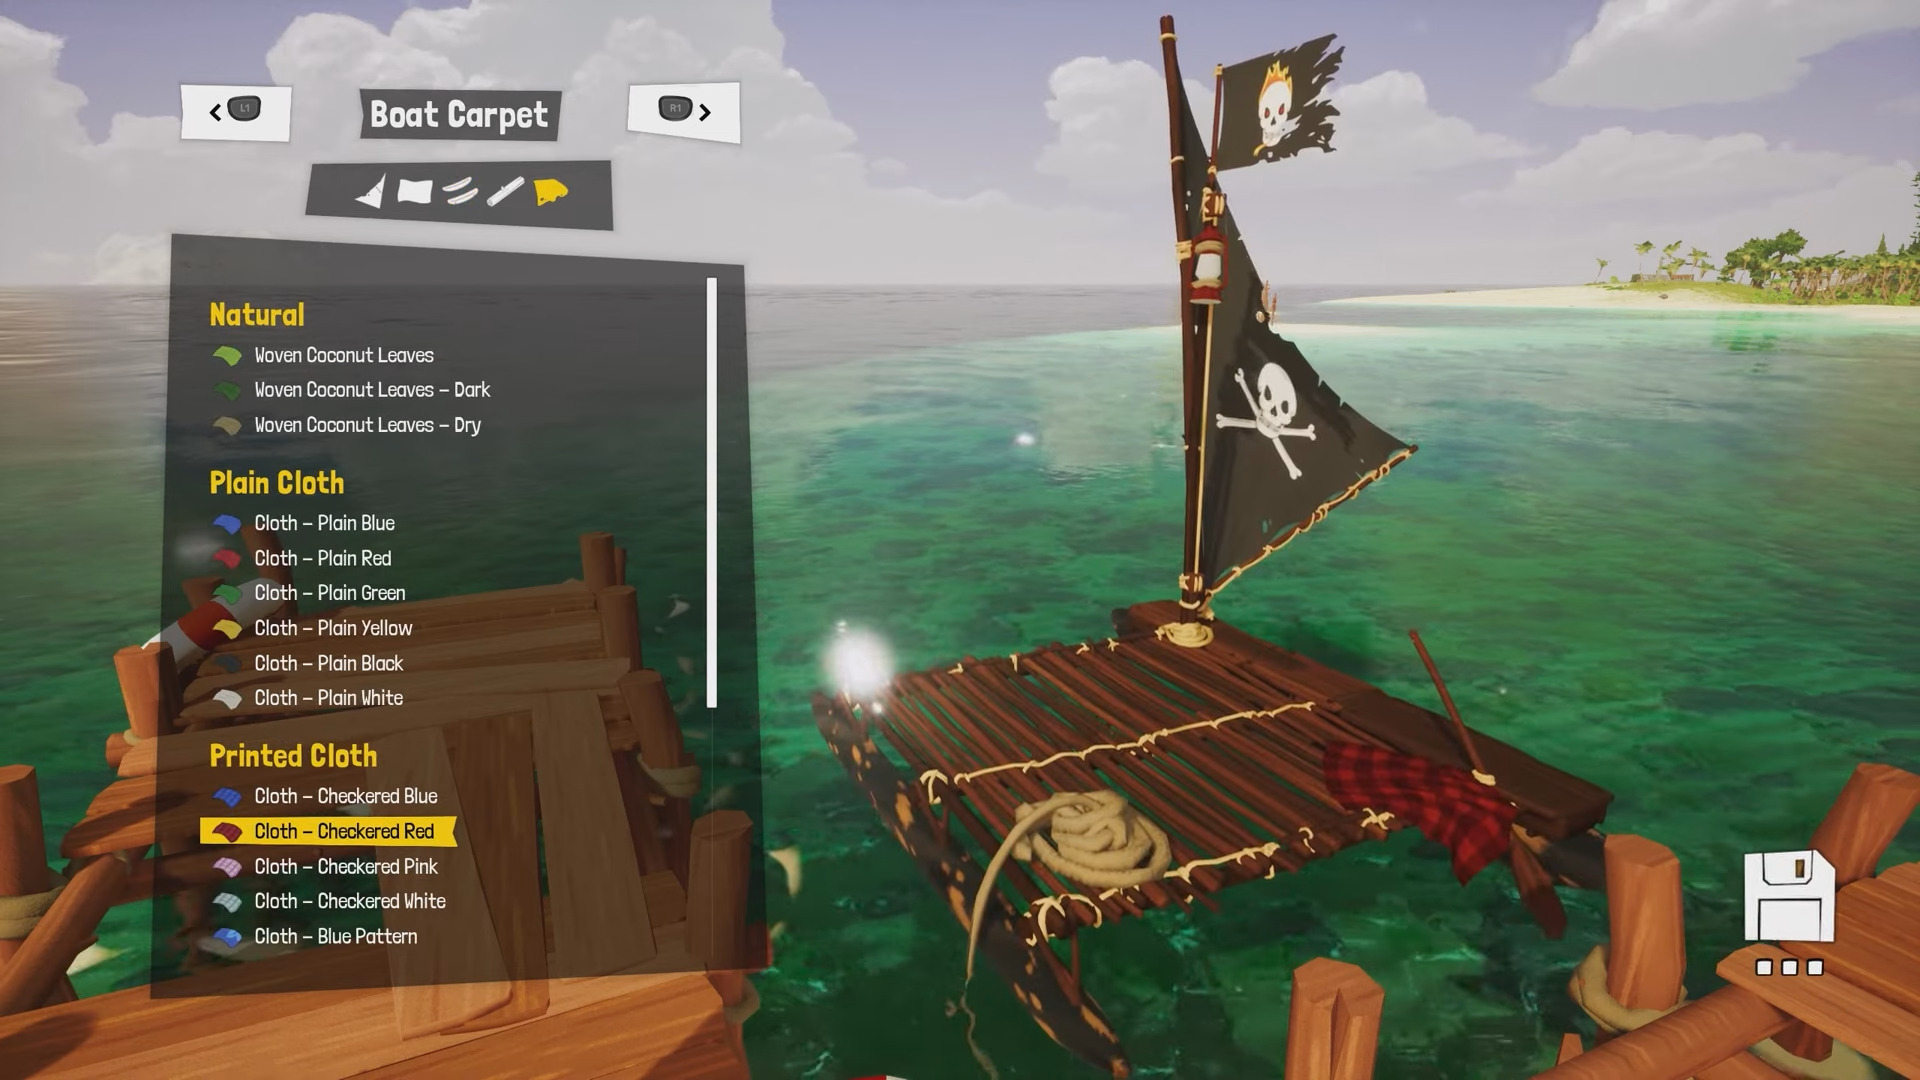 Awaceb habló de la personalización del personaje en Tchia. Los jugadores podrán buscar ropa diferente, crear su propio barco y tener una cámara de cine en su arsenal. -10